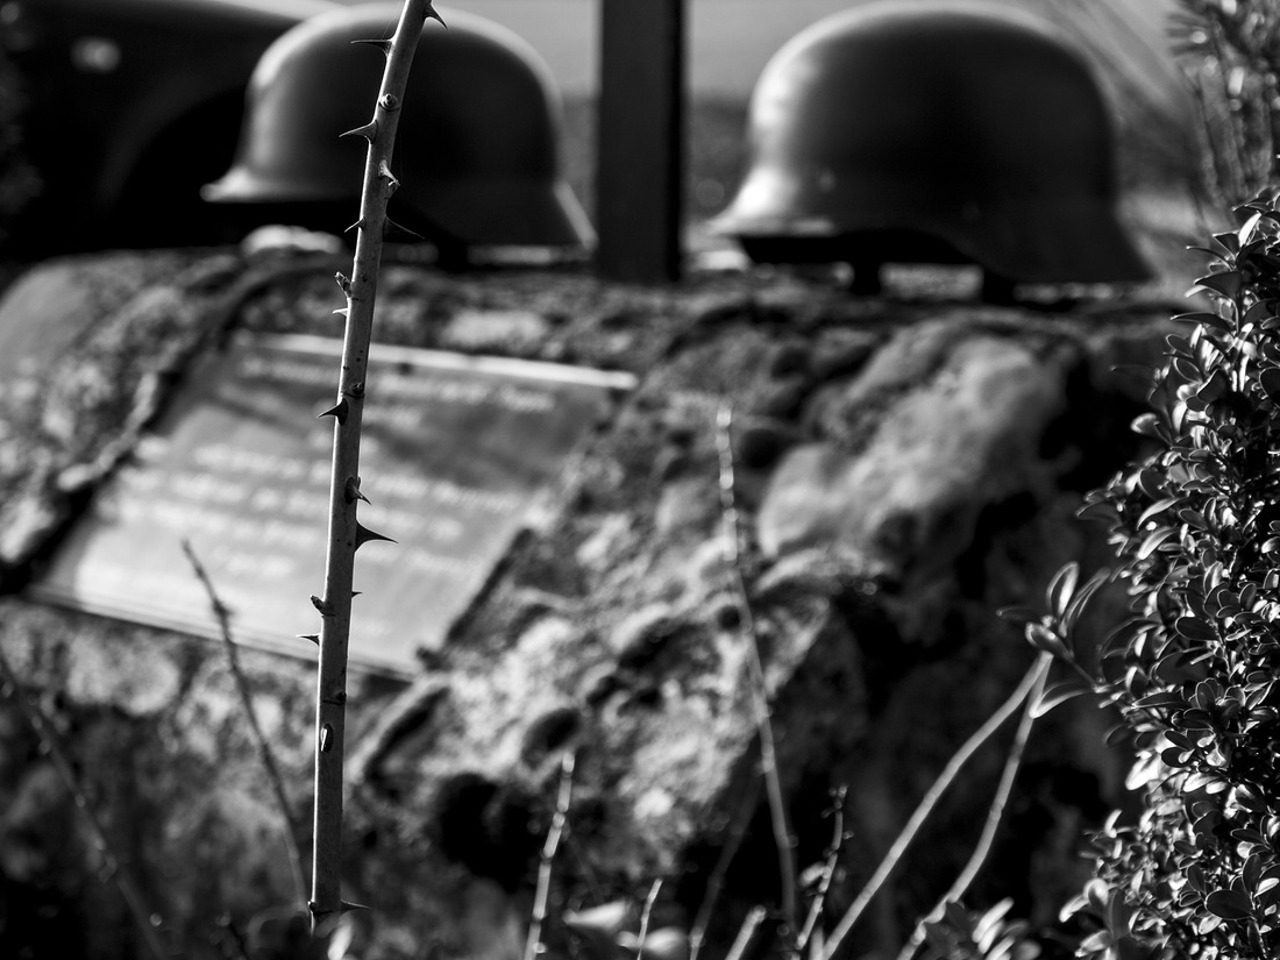 Image de guerre avec des casques de soldats posés sur ce qui pourrait être une tombe